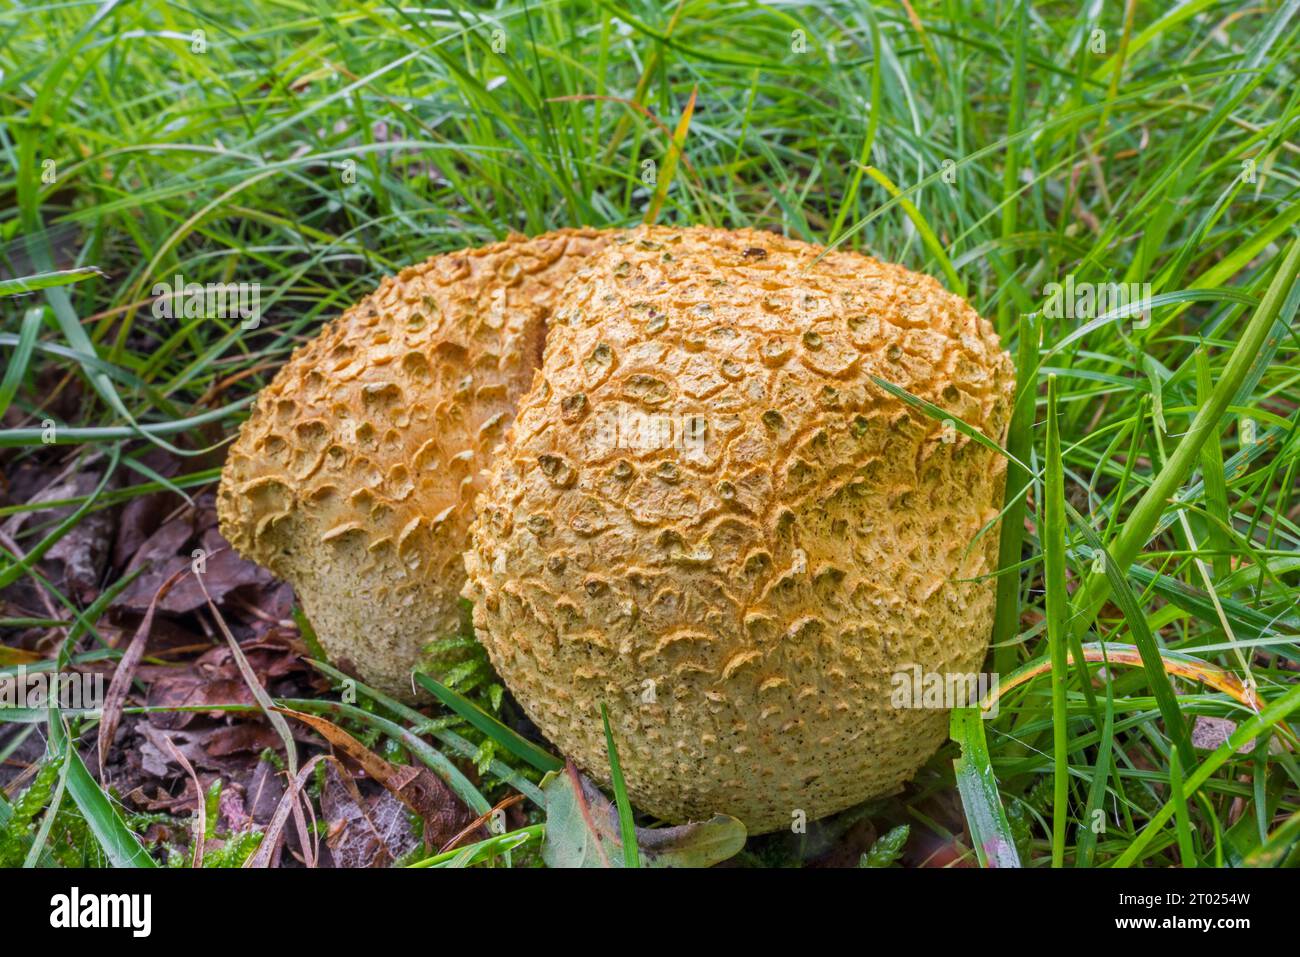 Bola de tierra común / bola de soplo de veneno de piel de cerdo / bola de tierra común (Scleroderma citrinum / Scleroderma aurantium) en la hierba en el bosque de otoño Foto de stock